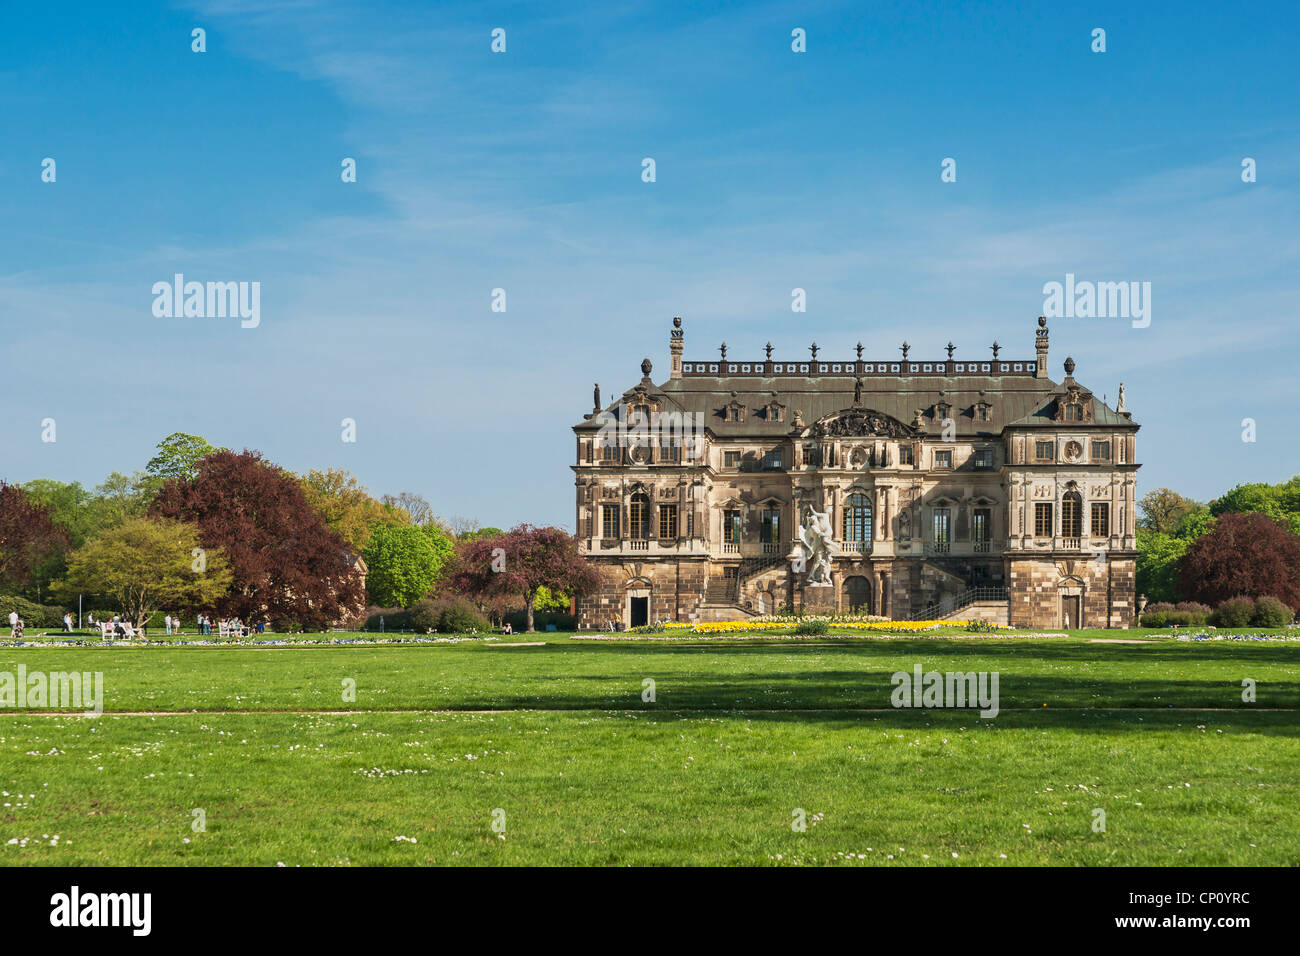 Palace dans le grand jardin Parc, Dresde, Saxe, Allemagne, Europe Banque D'Images